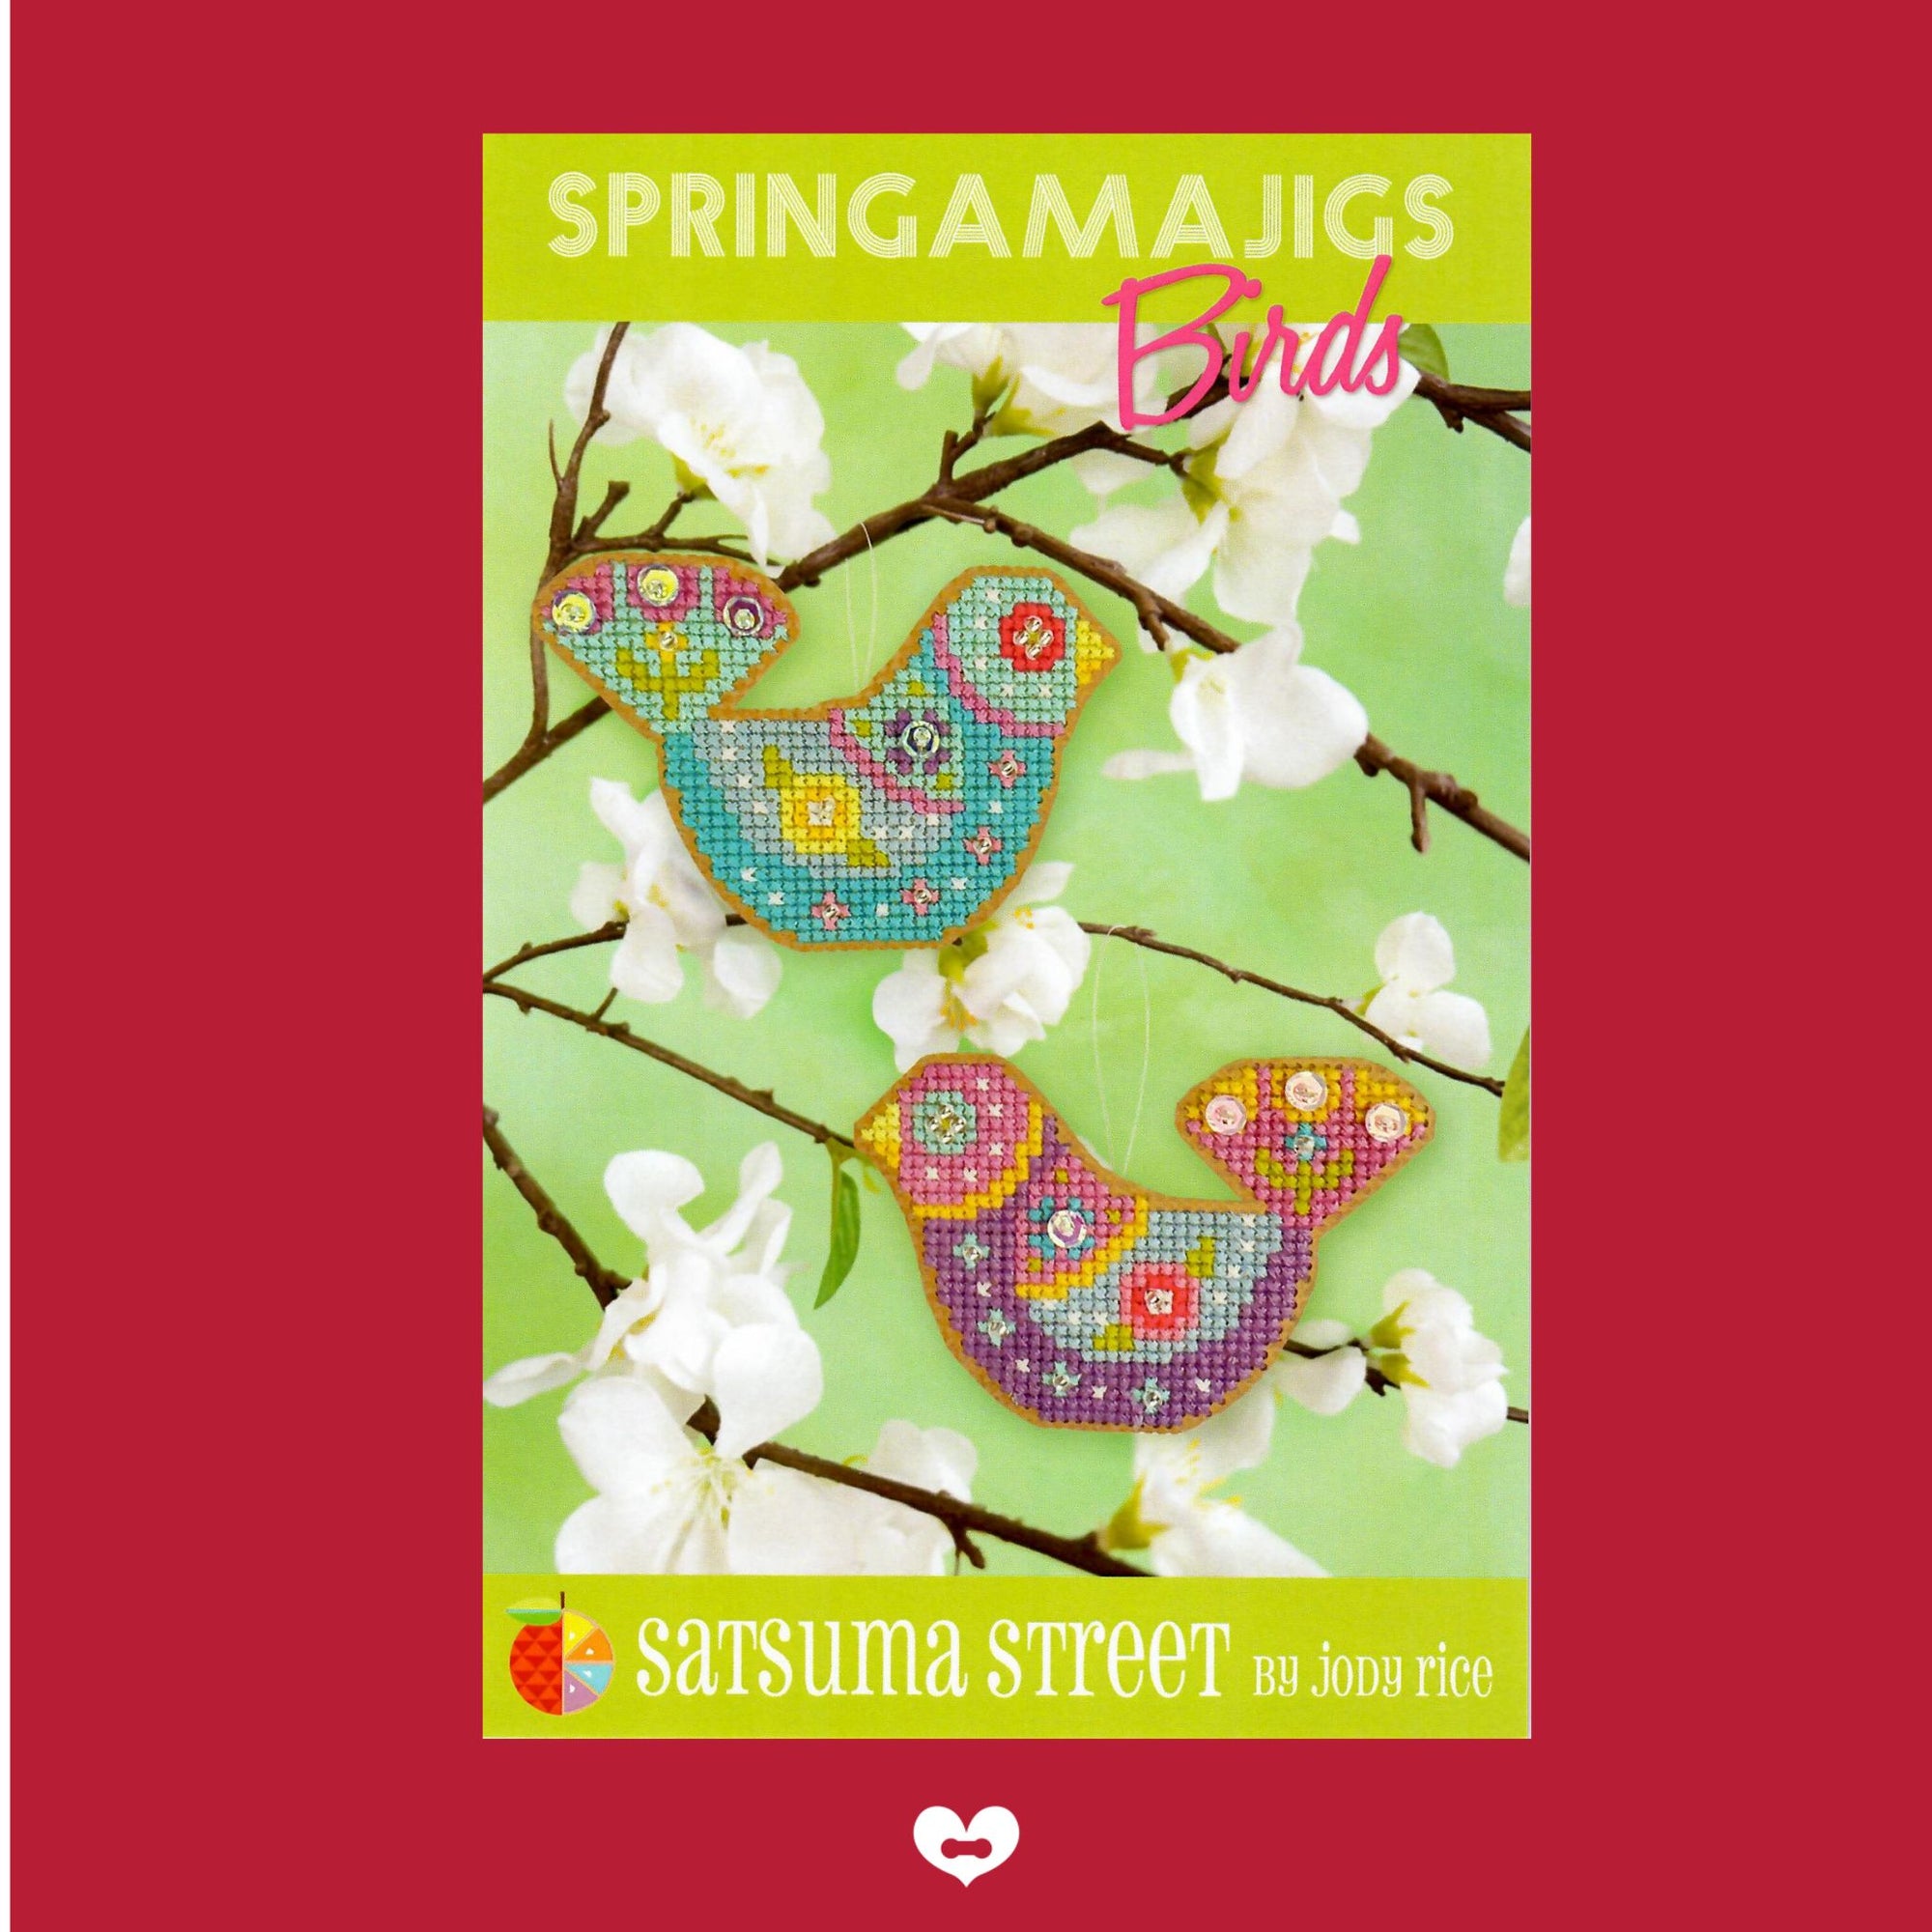 Springamajigs - Birds